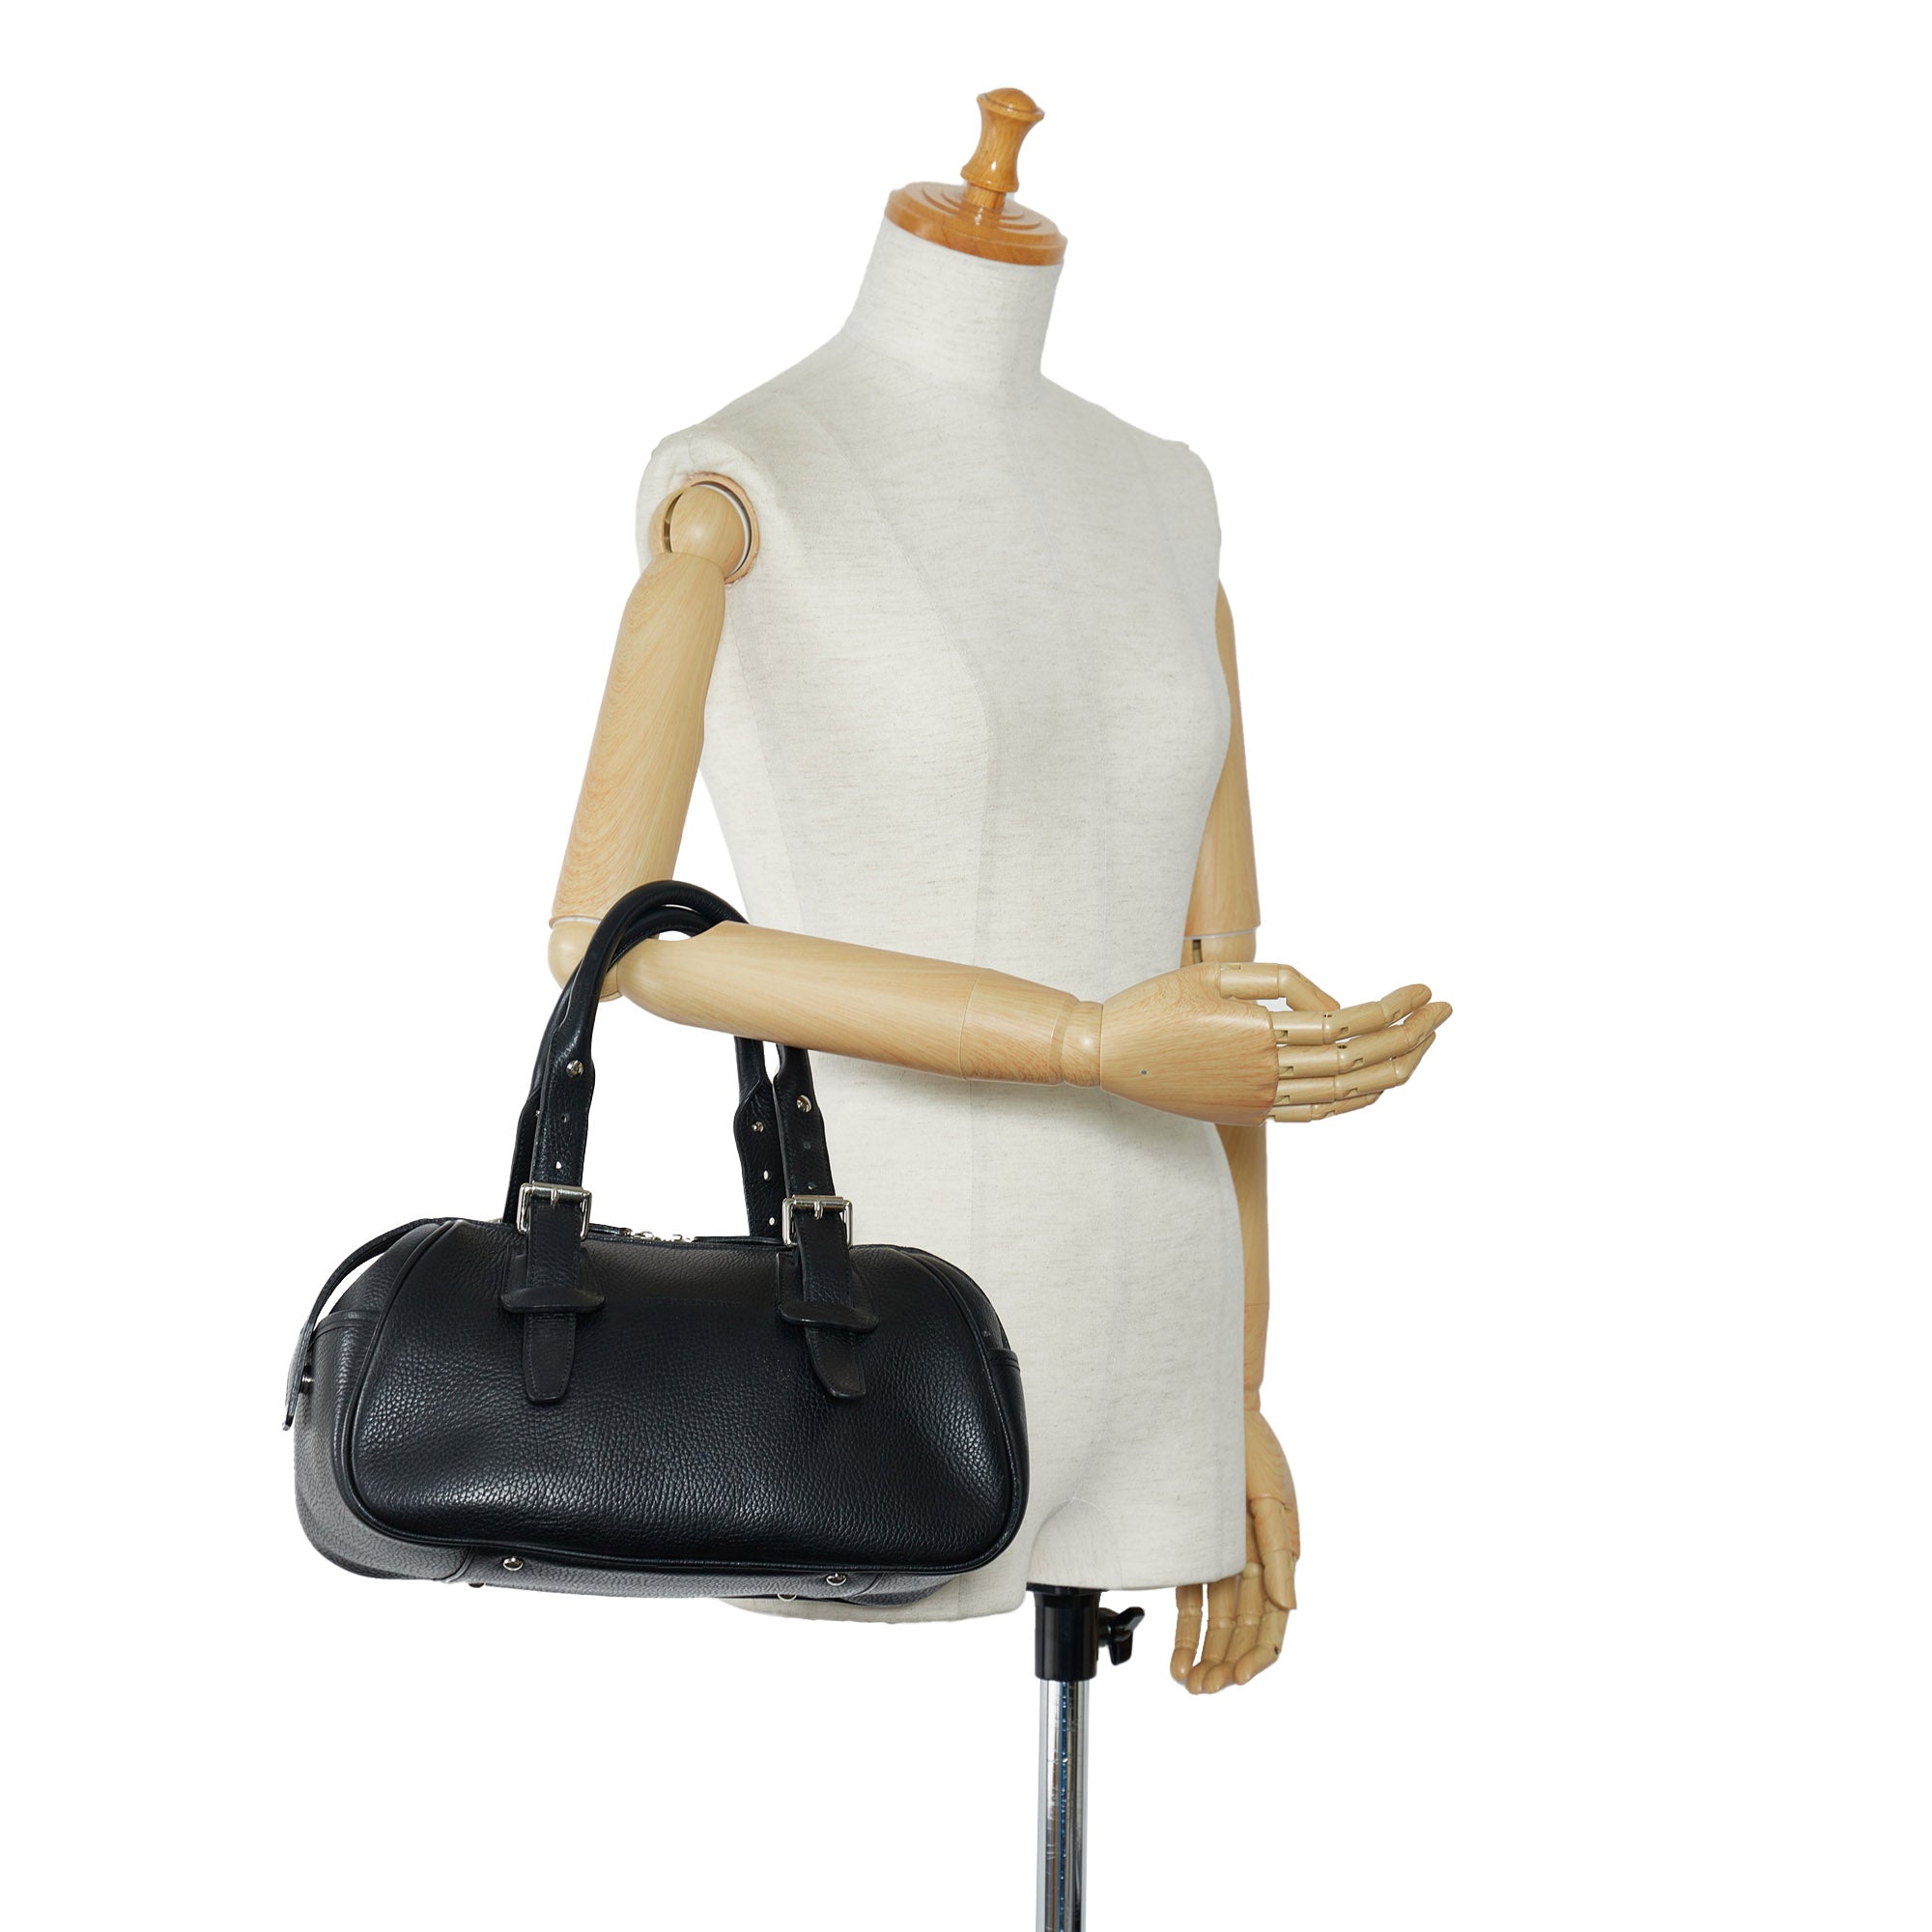 Louis Vuitton Jasmin Leather Handbag